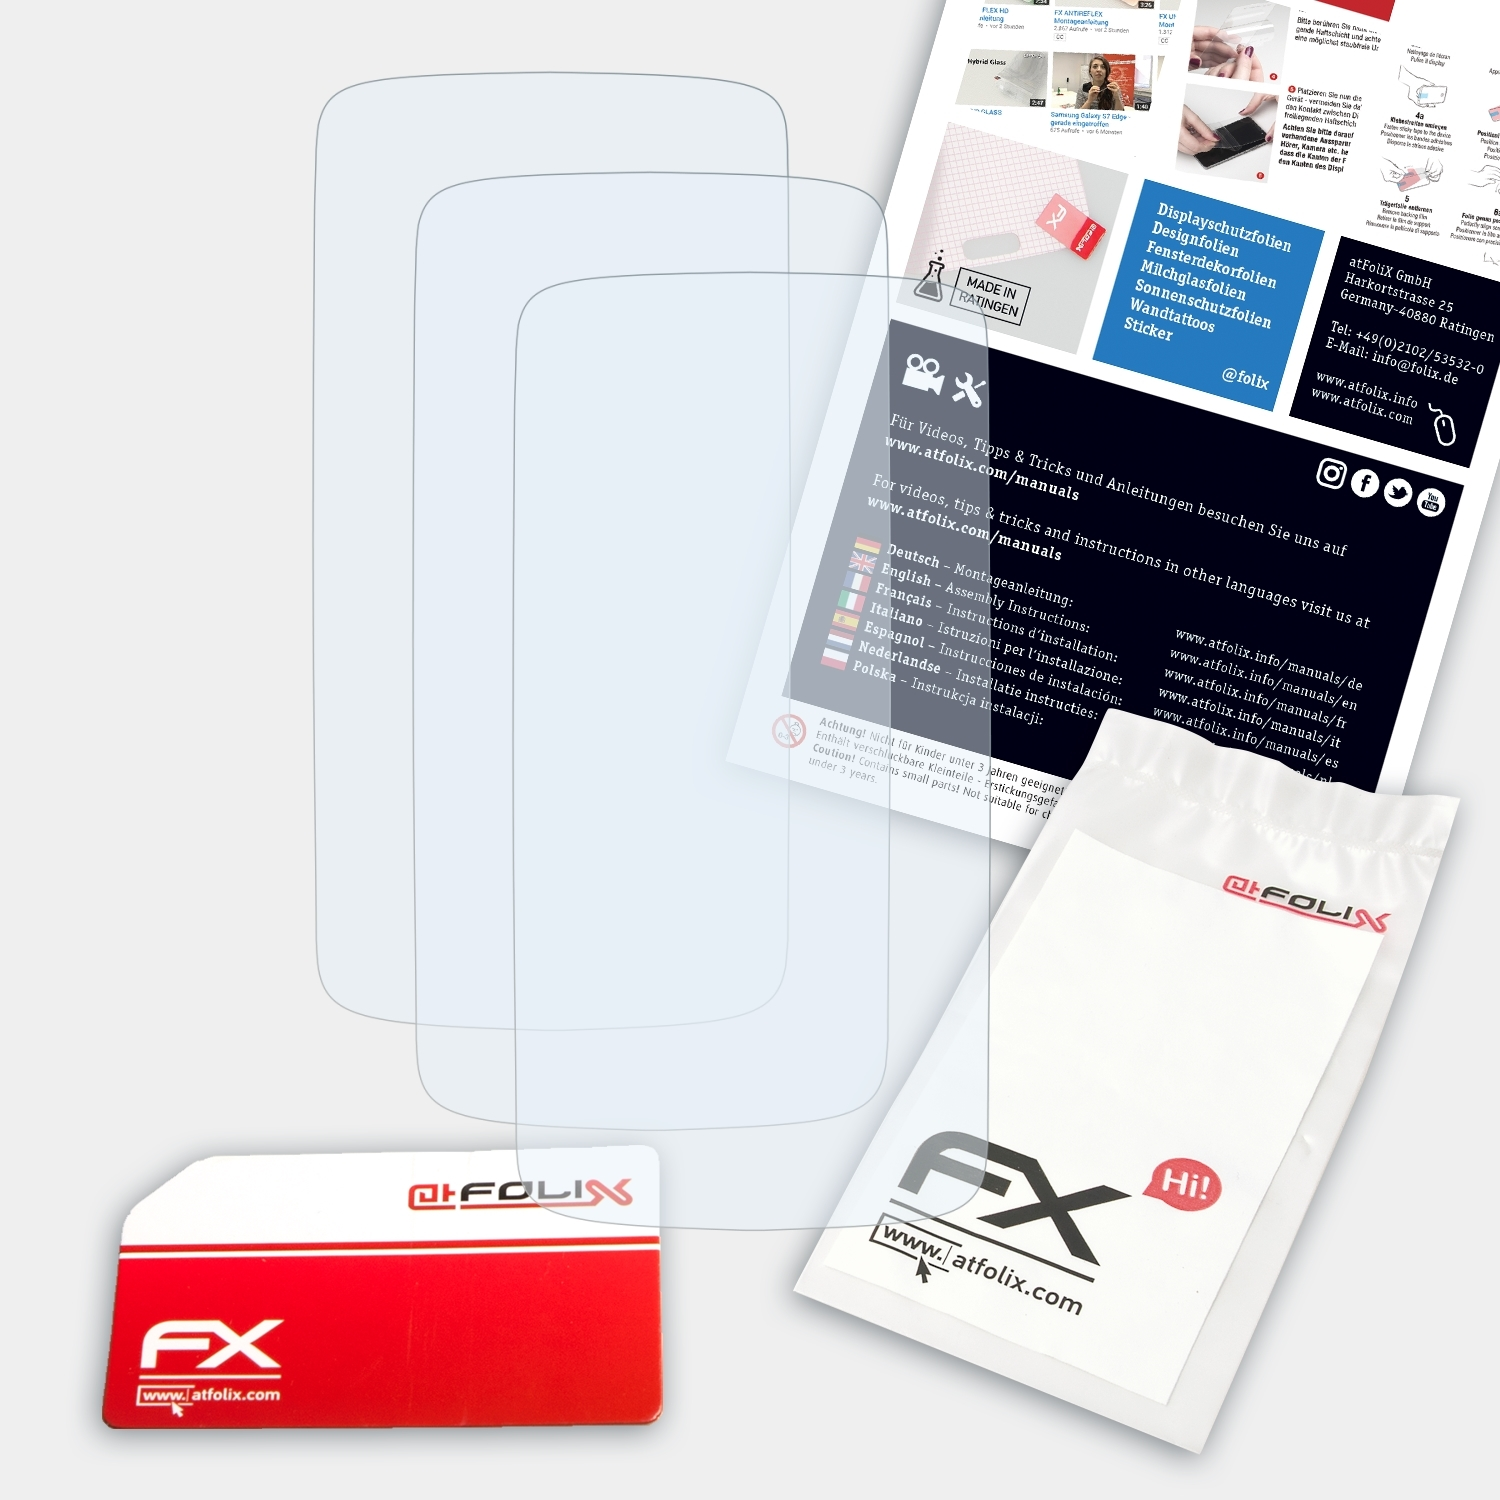 ATFOLIX 3x FX-Clear One S) Displayschutz(für HTC